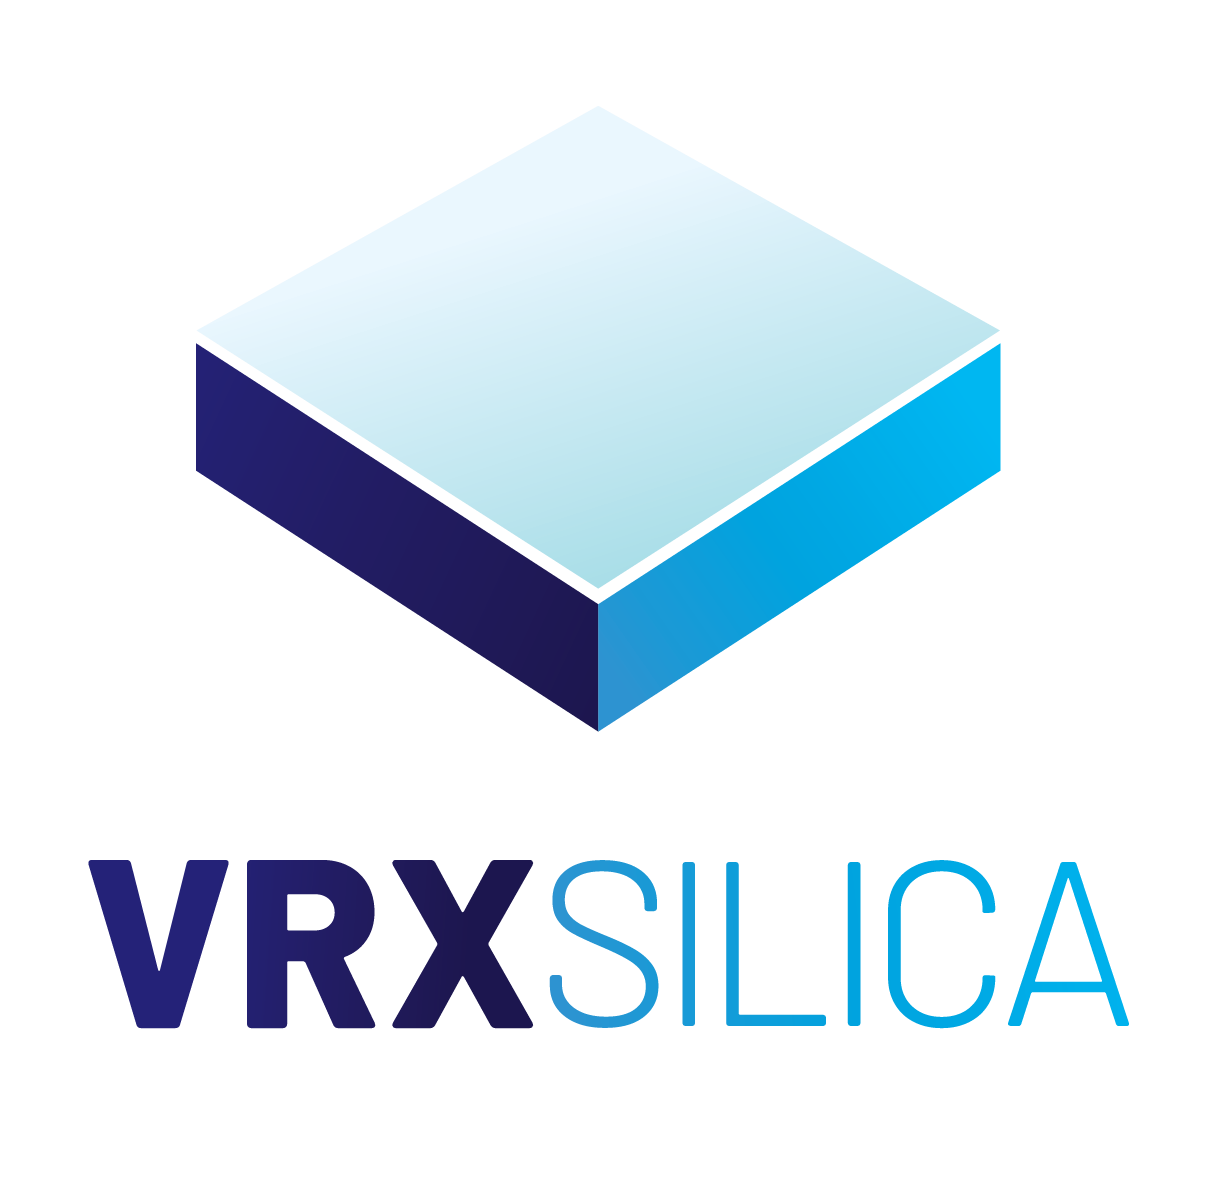 VRX Silica Ltd